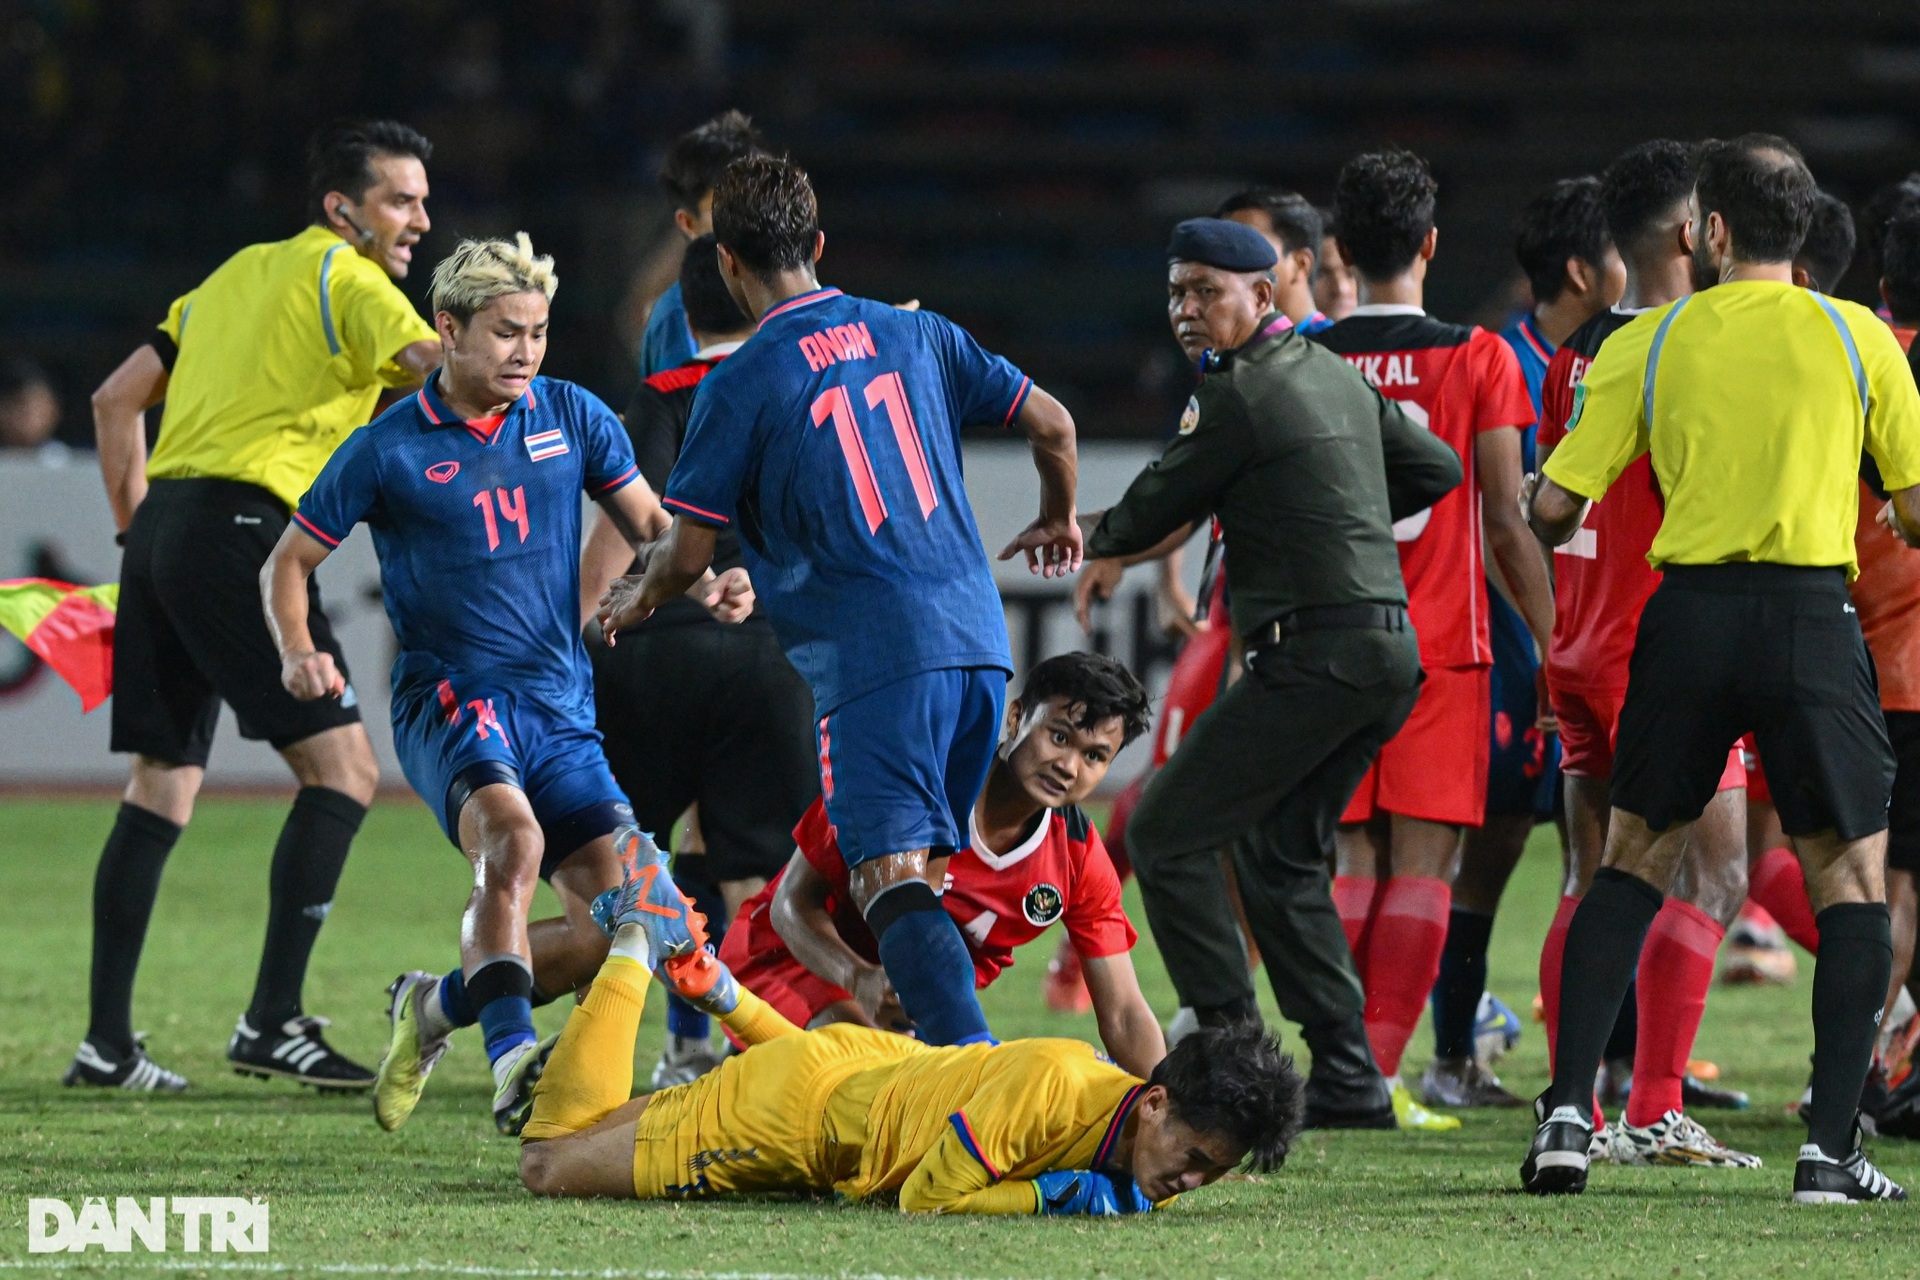 Toàn cảnh cuộc ẩu đả đáng xấu hổ trong trận chung kết bóng đá nam SEA Games - 13